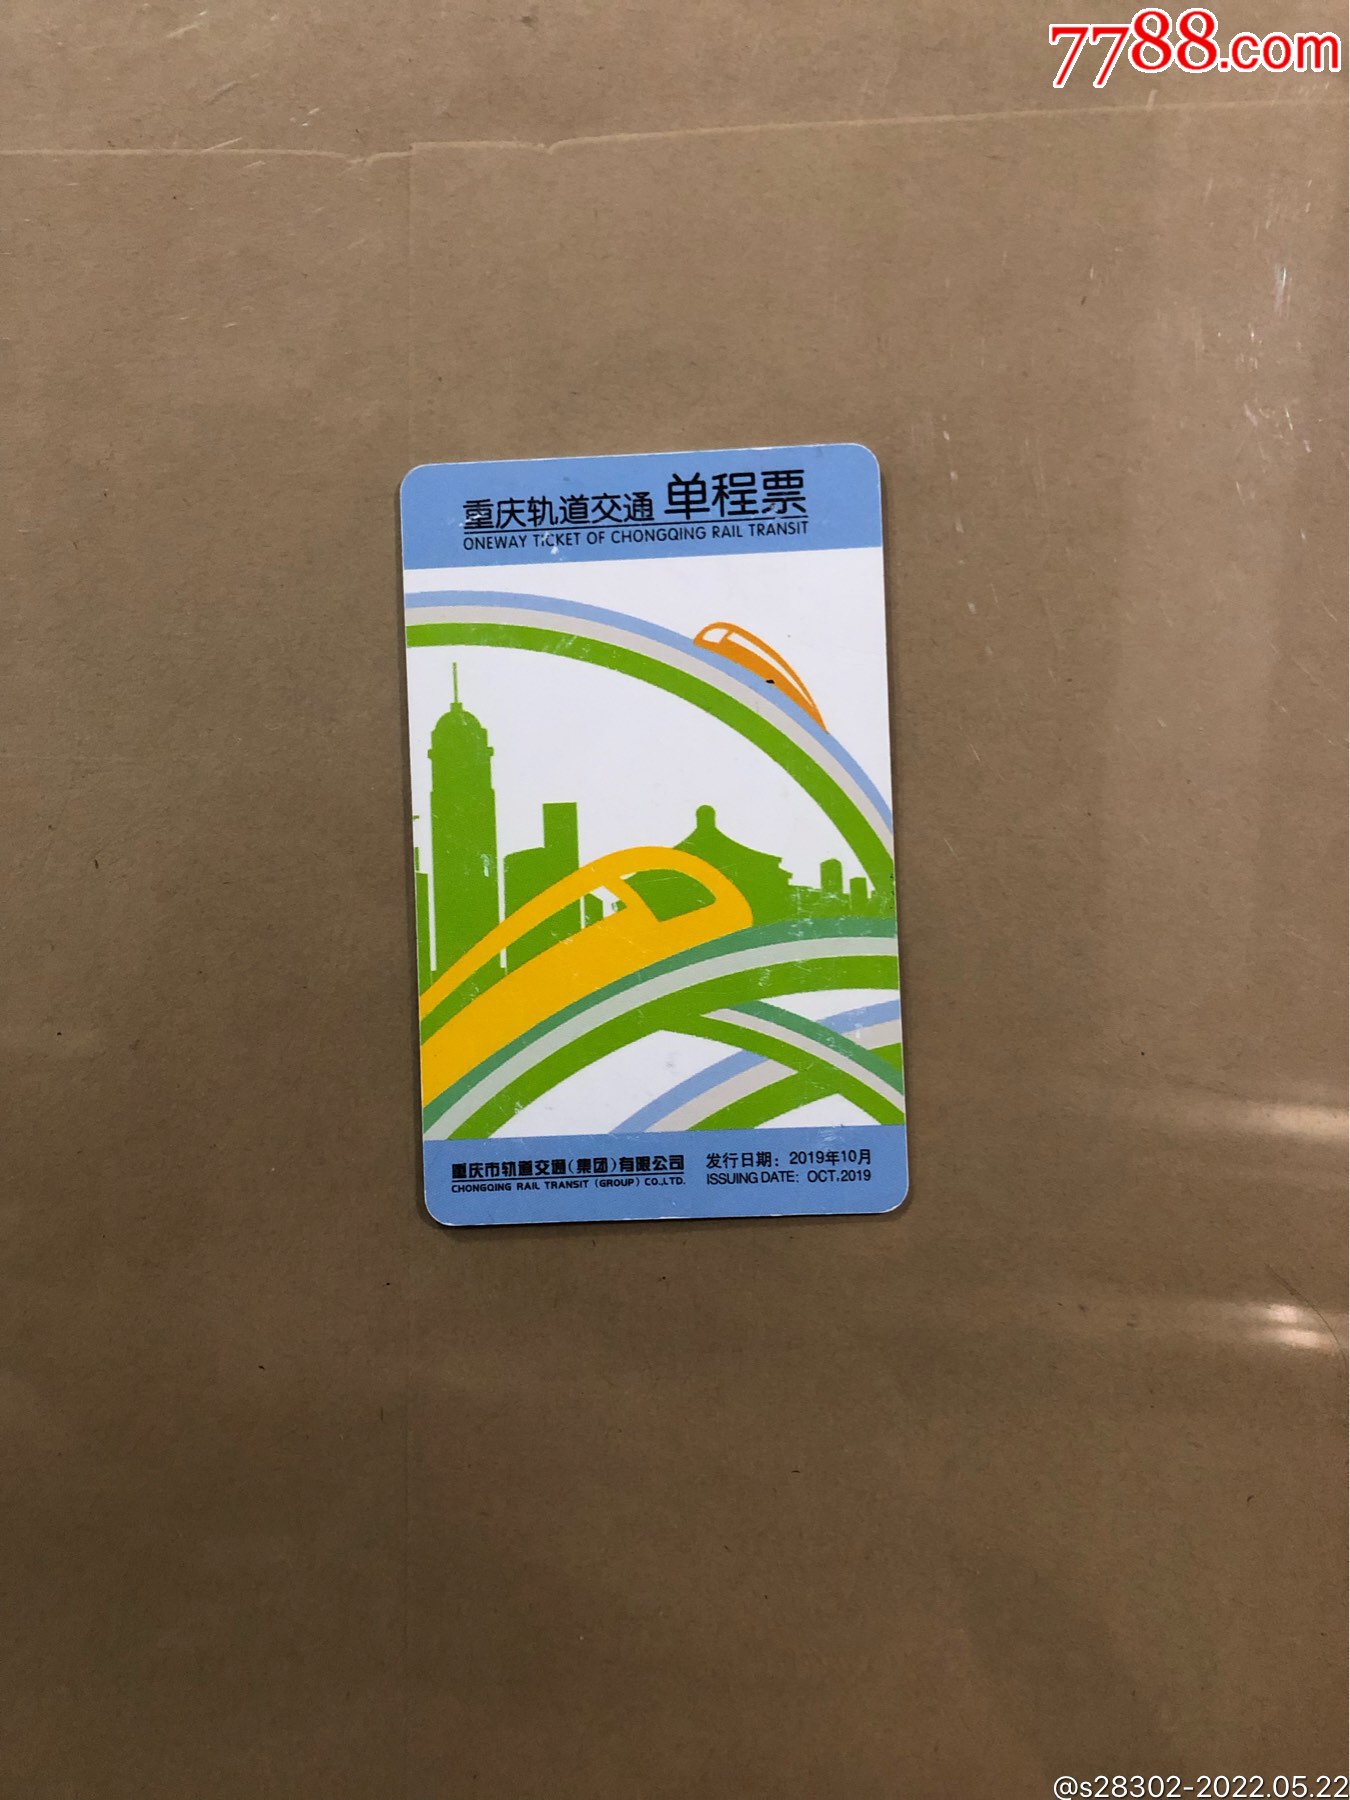 重庆地铁发票图片